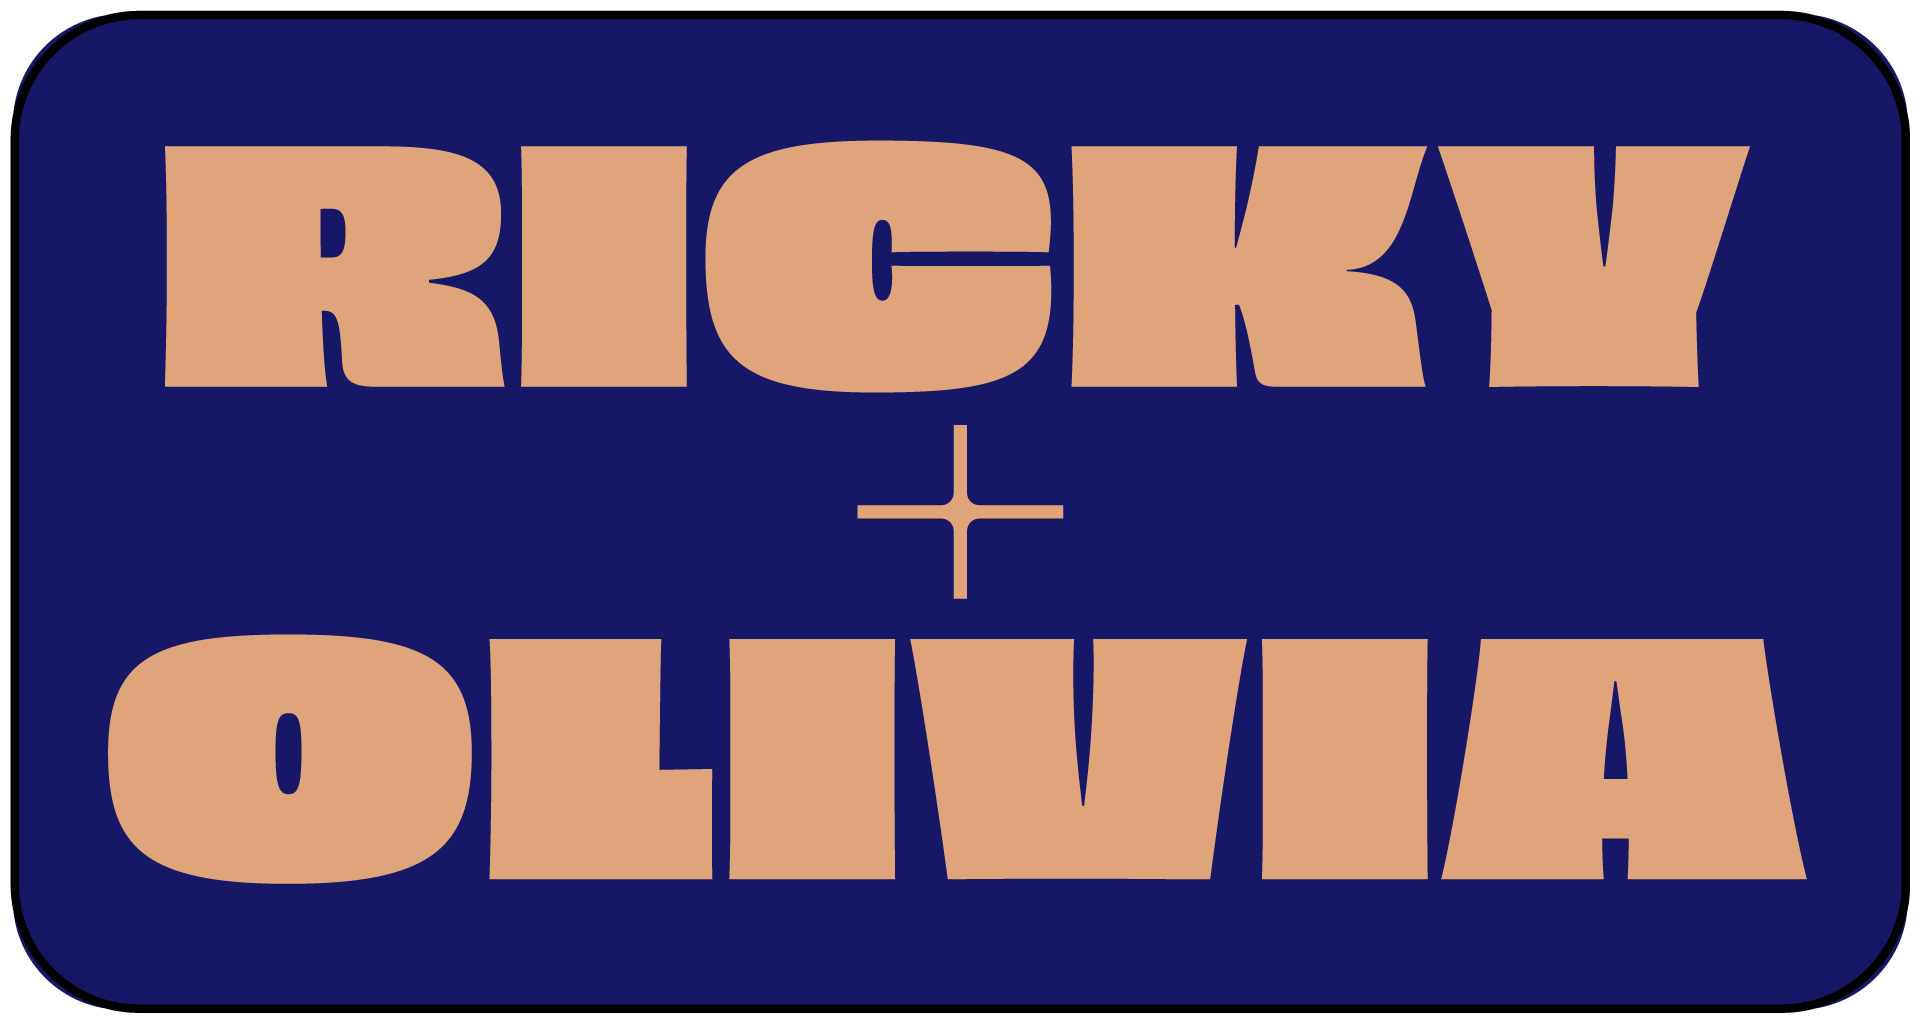 Ricky + Olivia